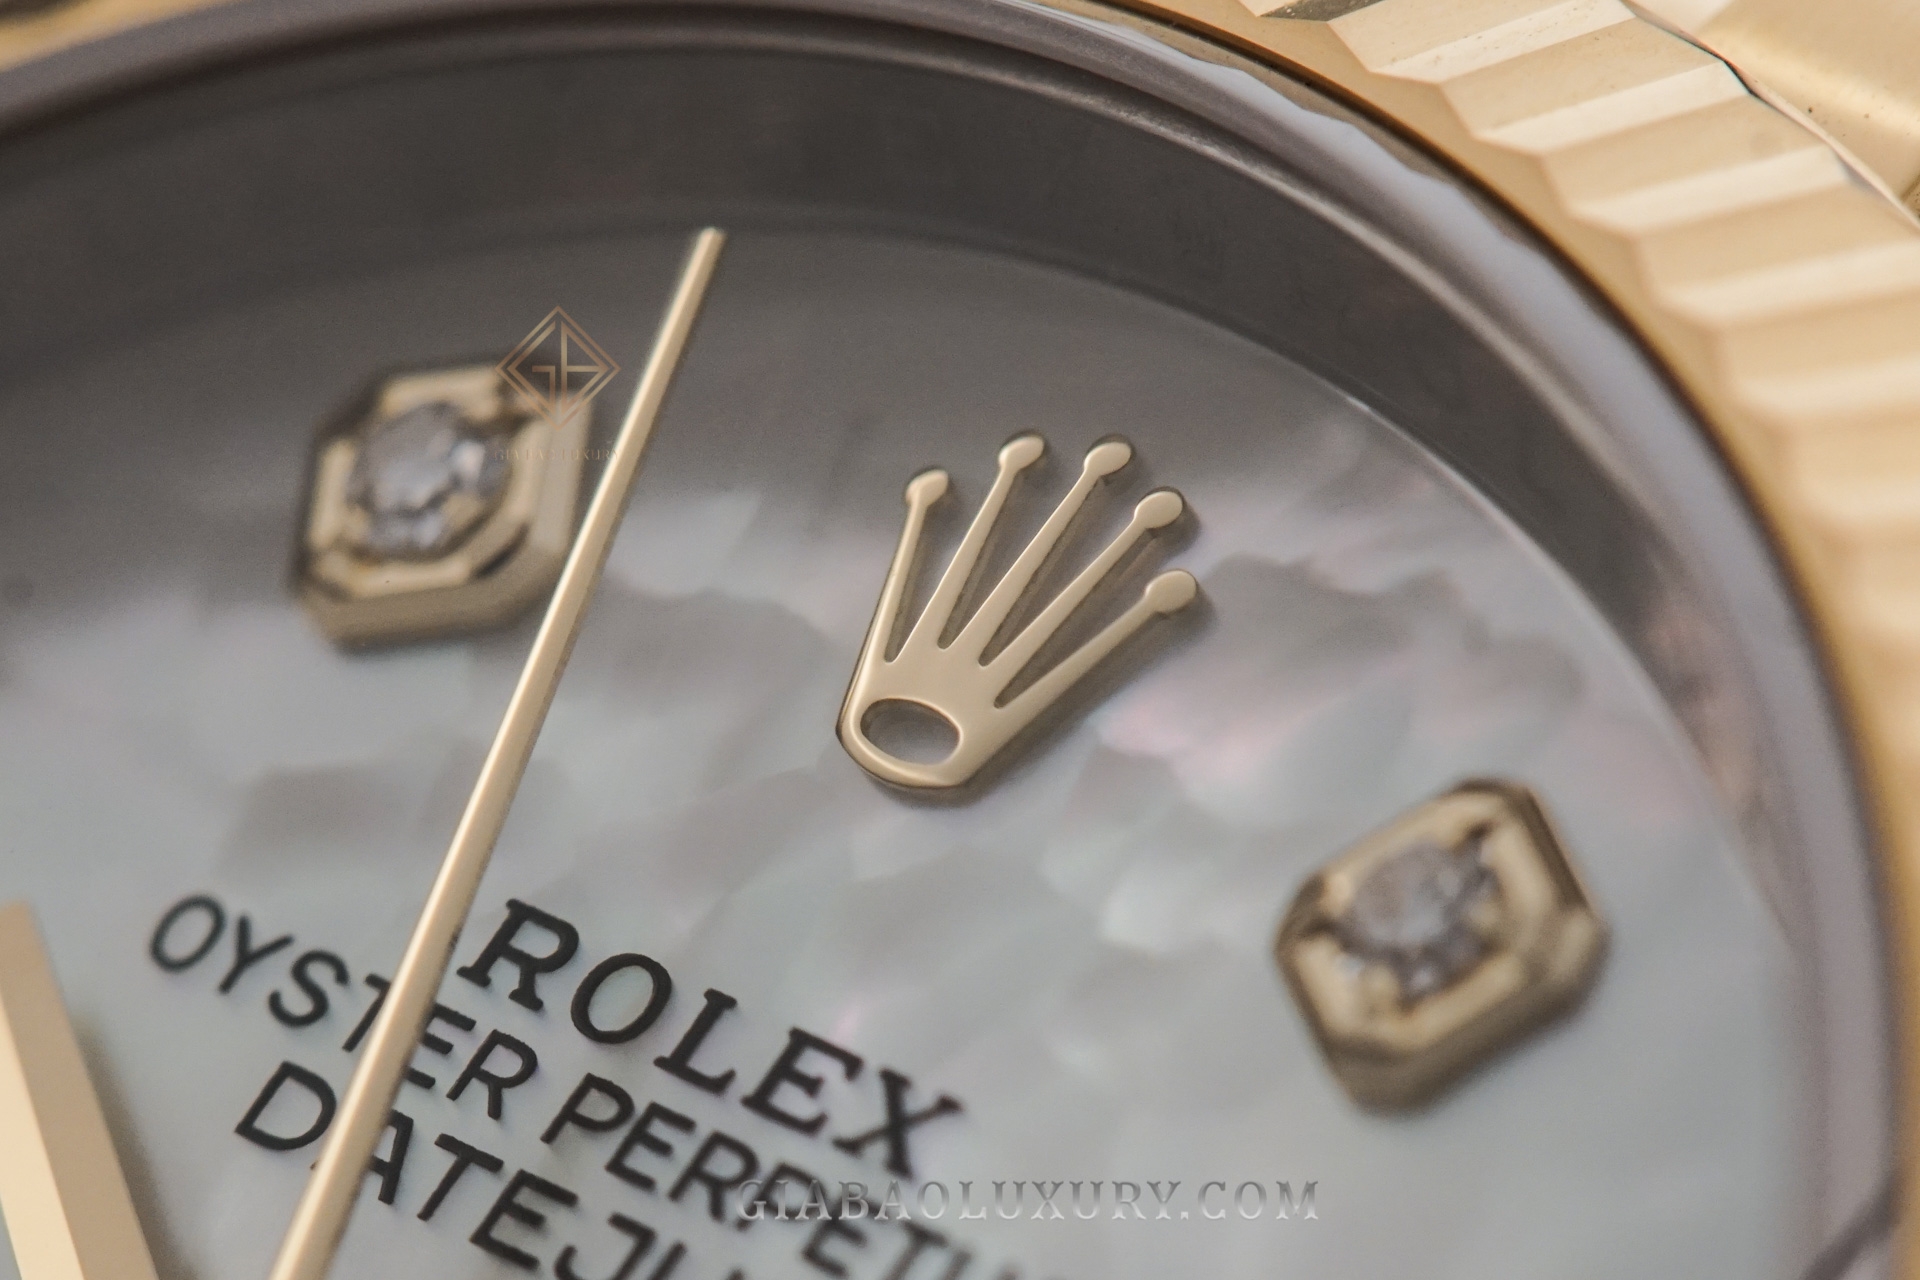 đồng hồ Rolex Datejust 36 126233 với mặt số vỏ trai trắng